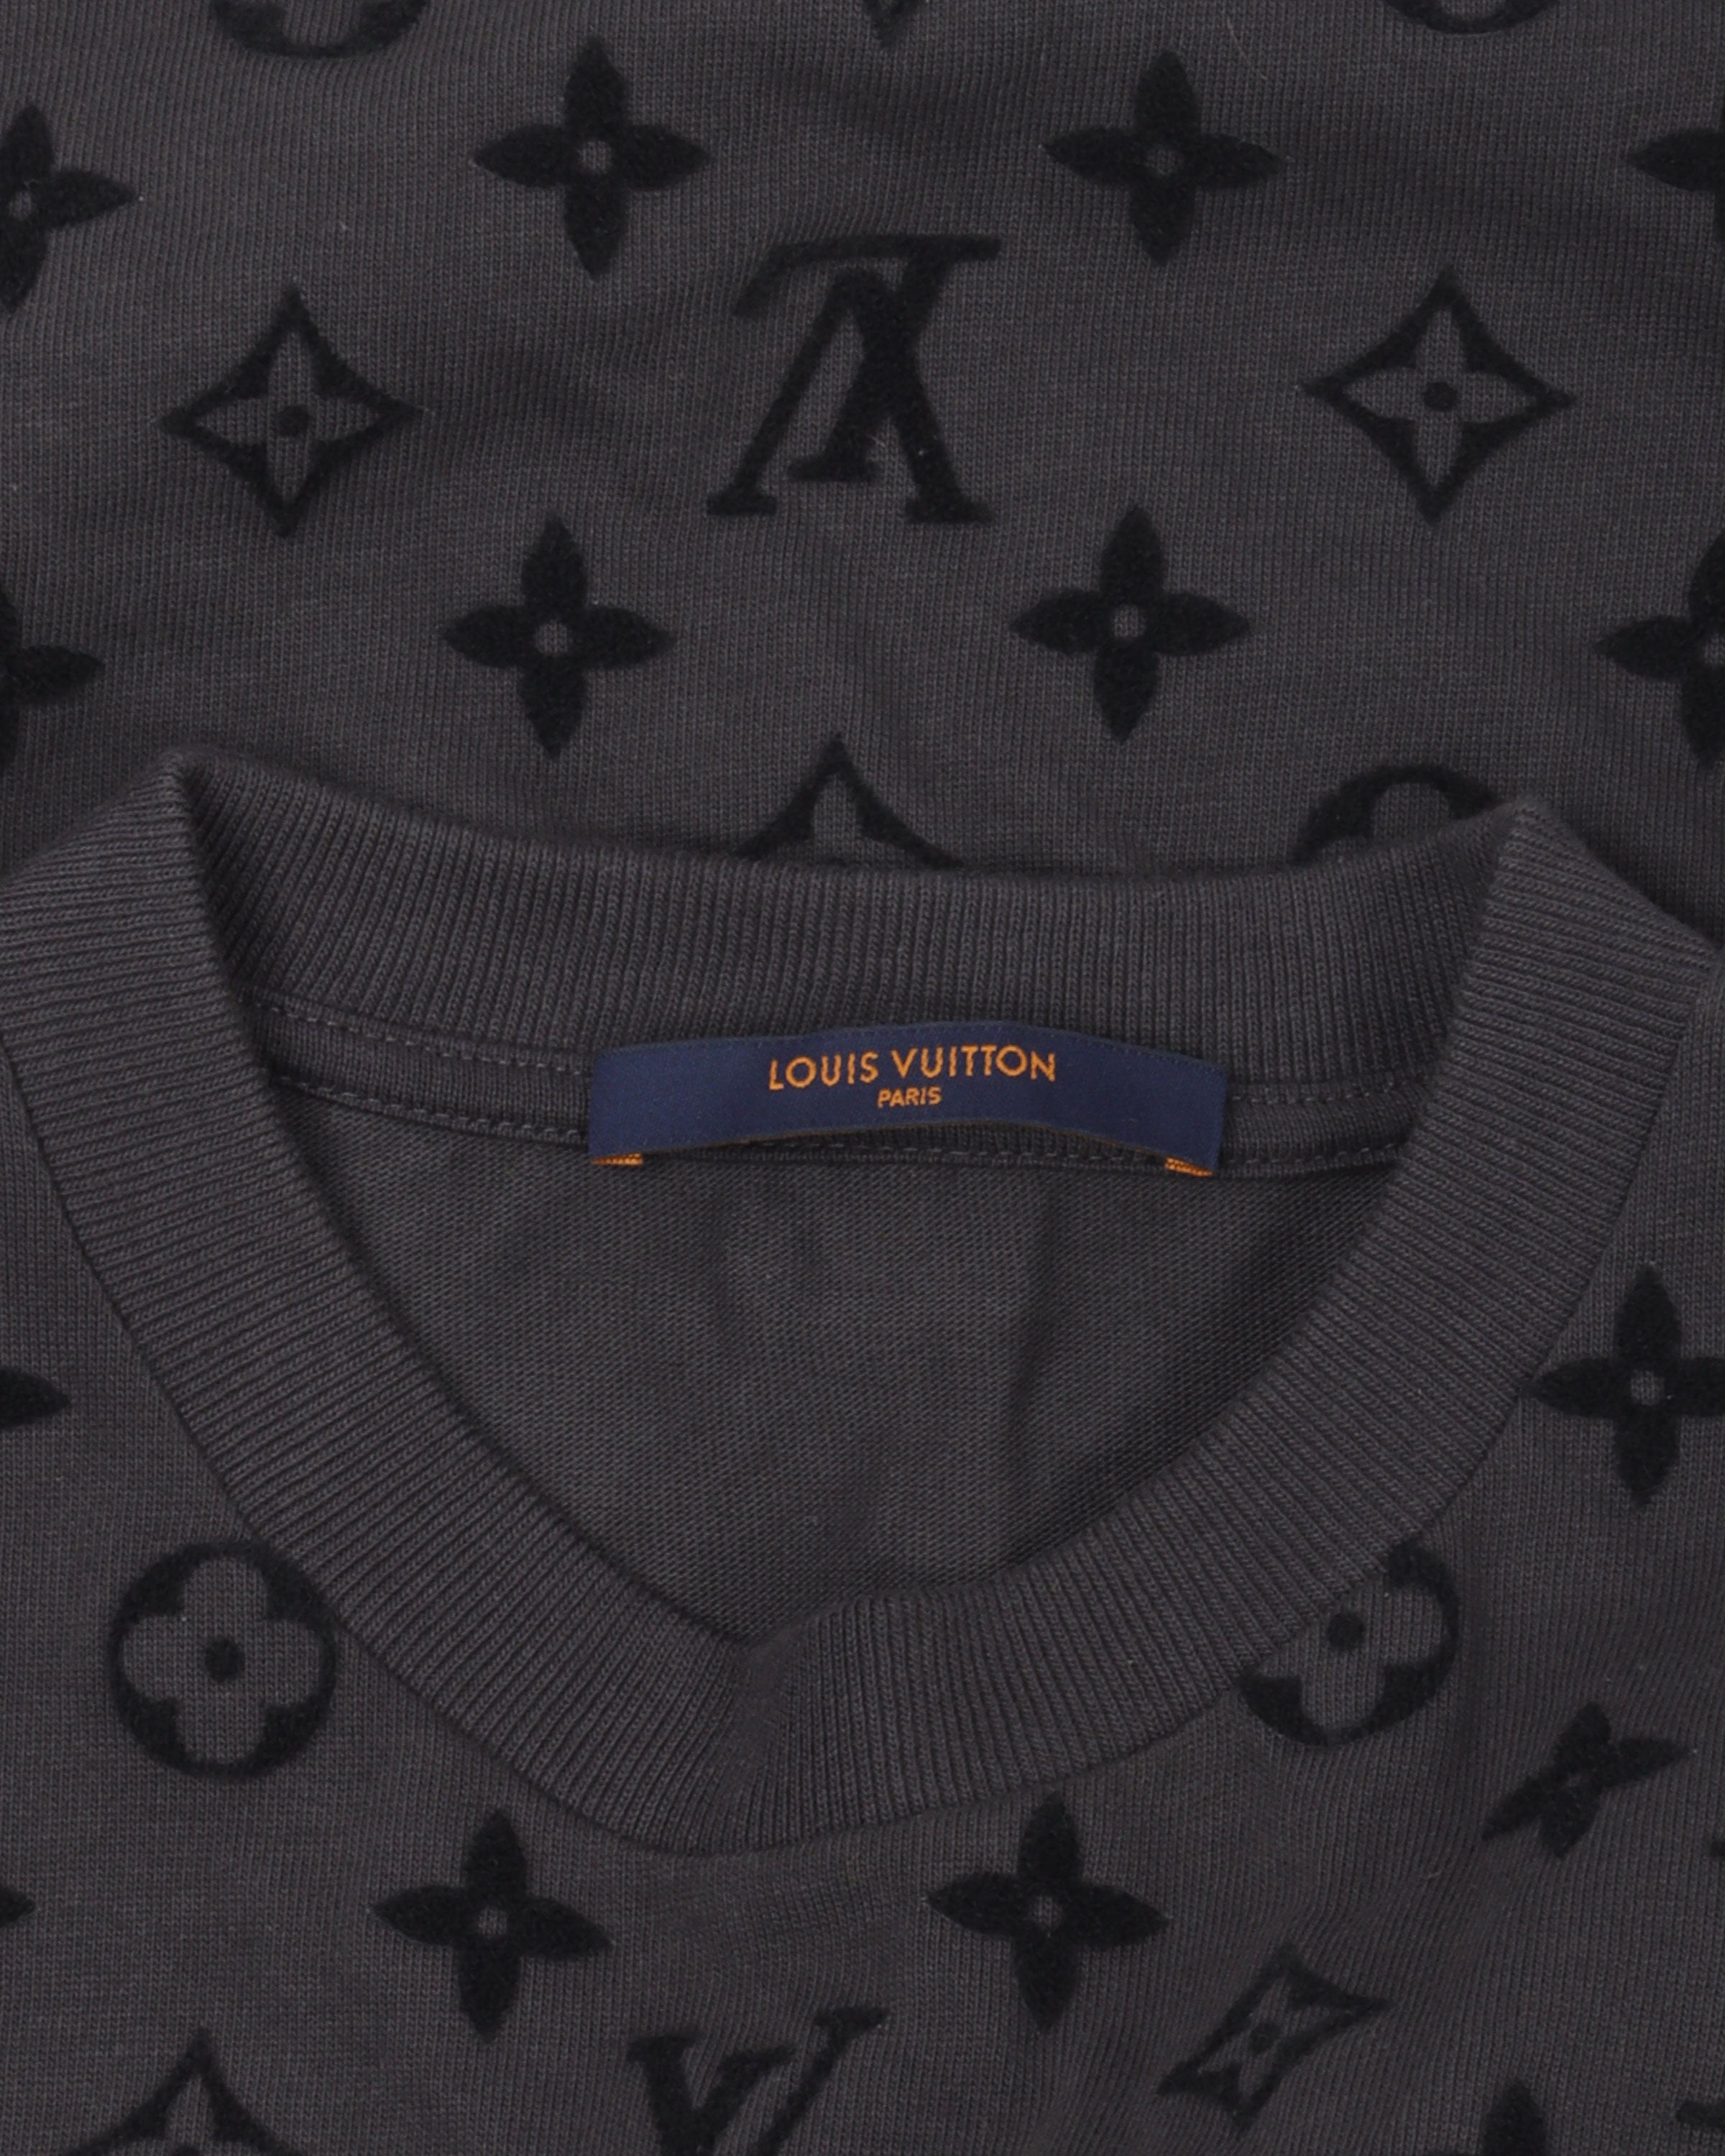 bookofjoe: Louis Vuitton Pocket T-Shirt